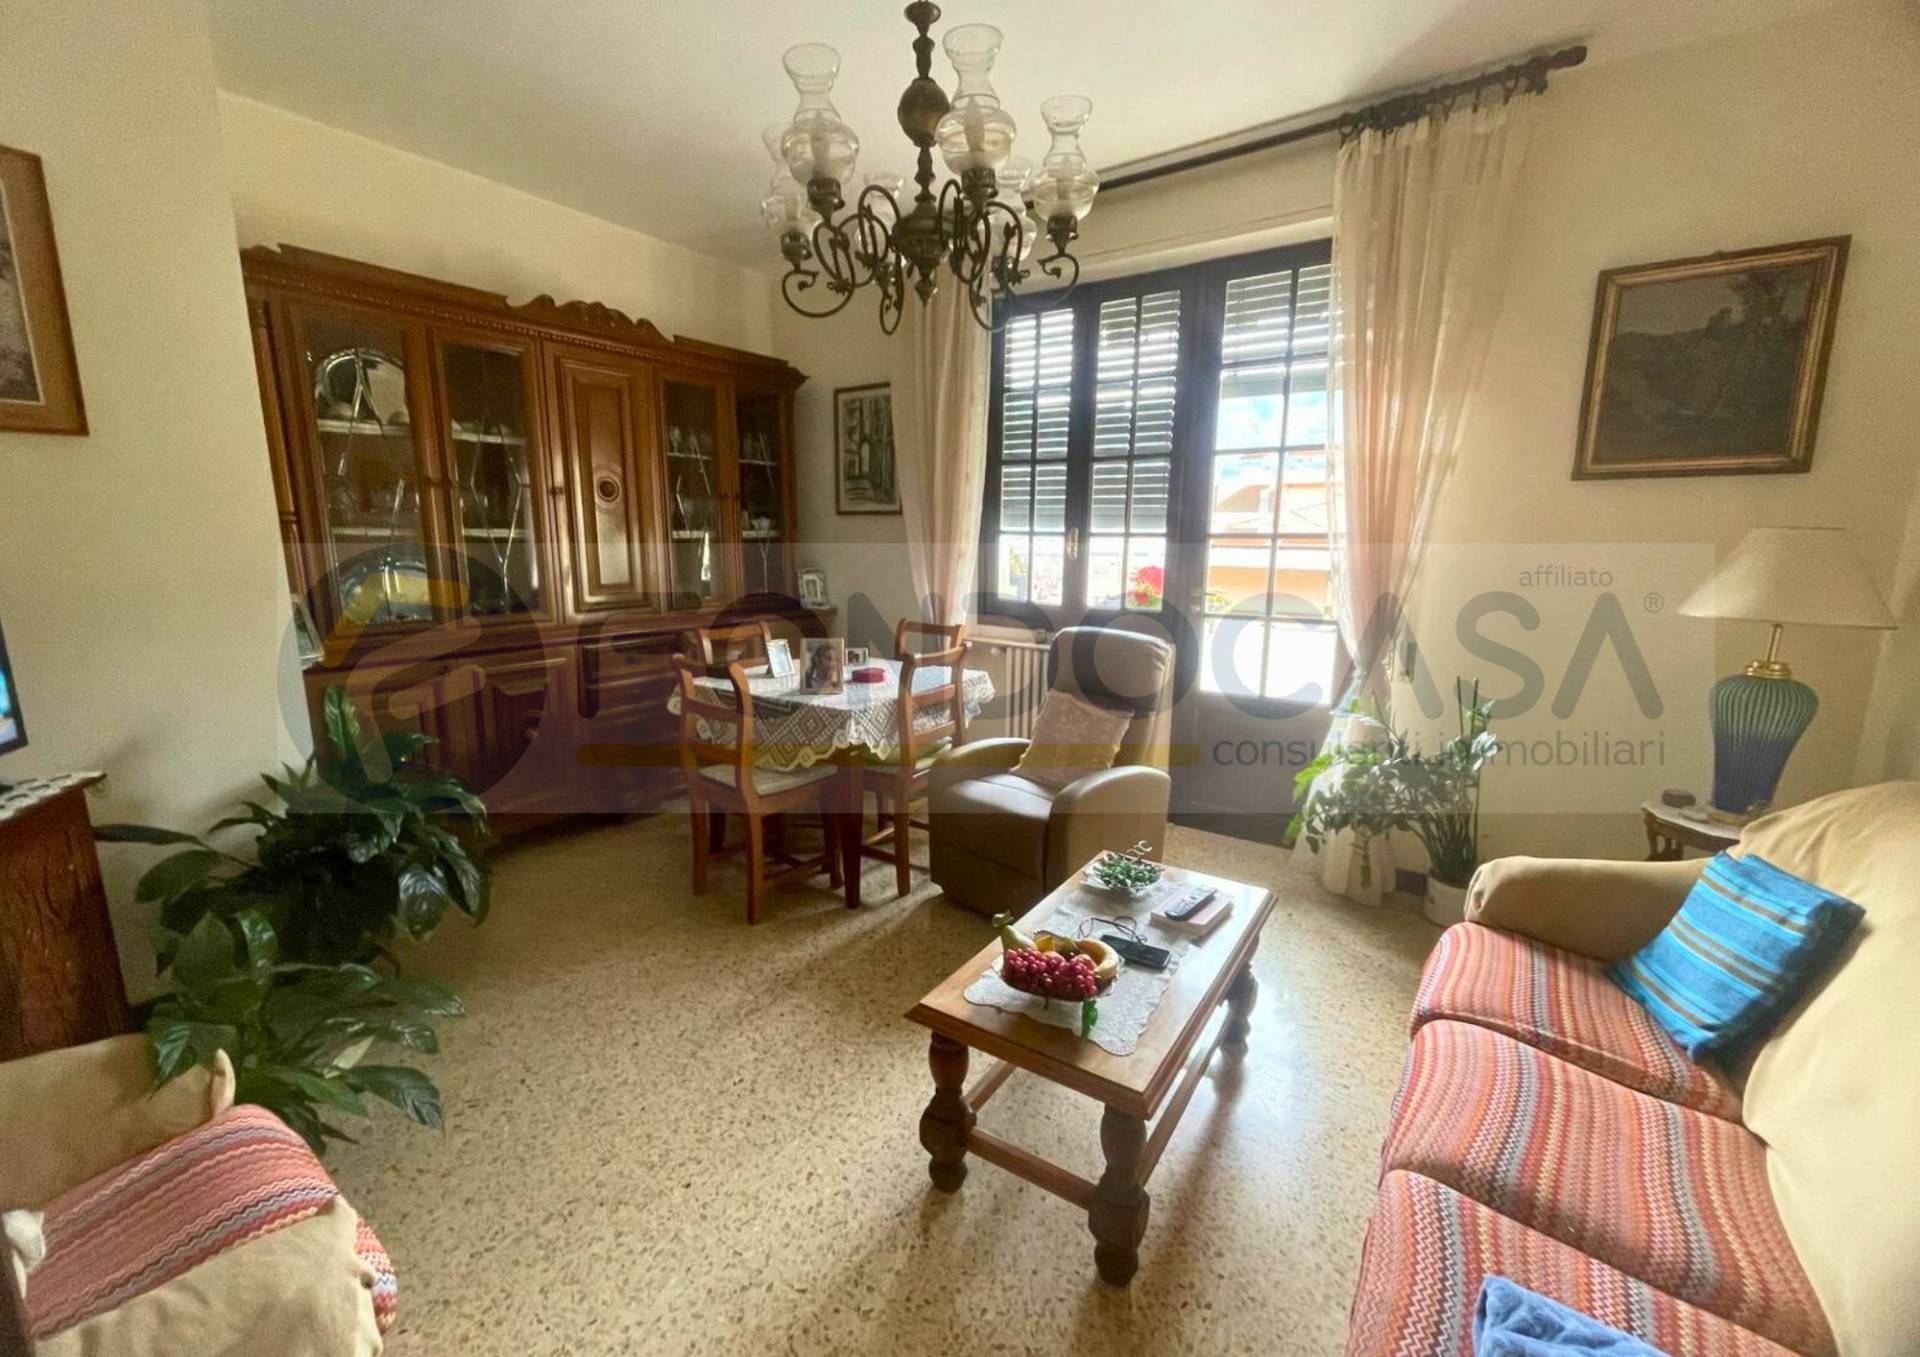 Appartamento in vendita a Ventimiglia, 5 locali, zona rino, prezzo € 175.000 | PortaleAgenzieImmobiliari.it